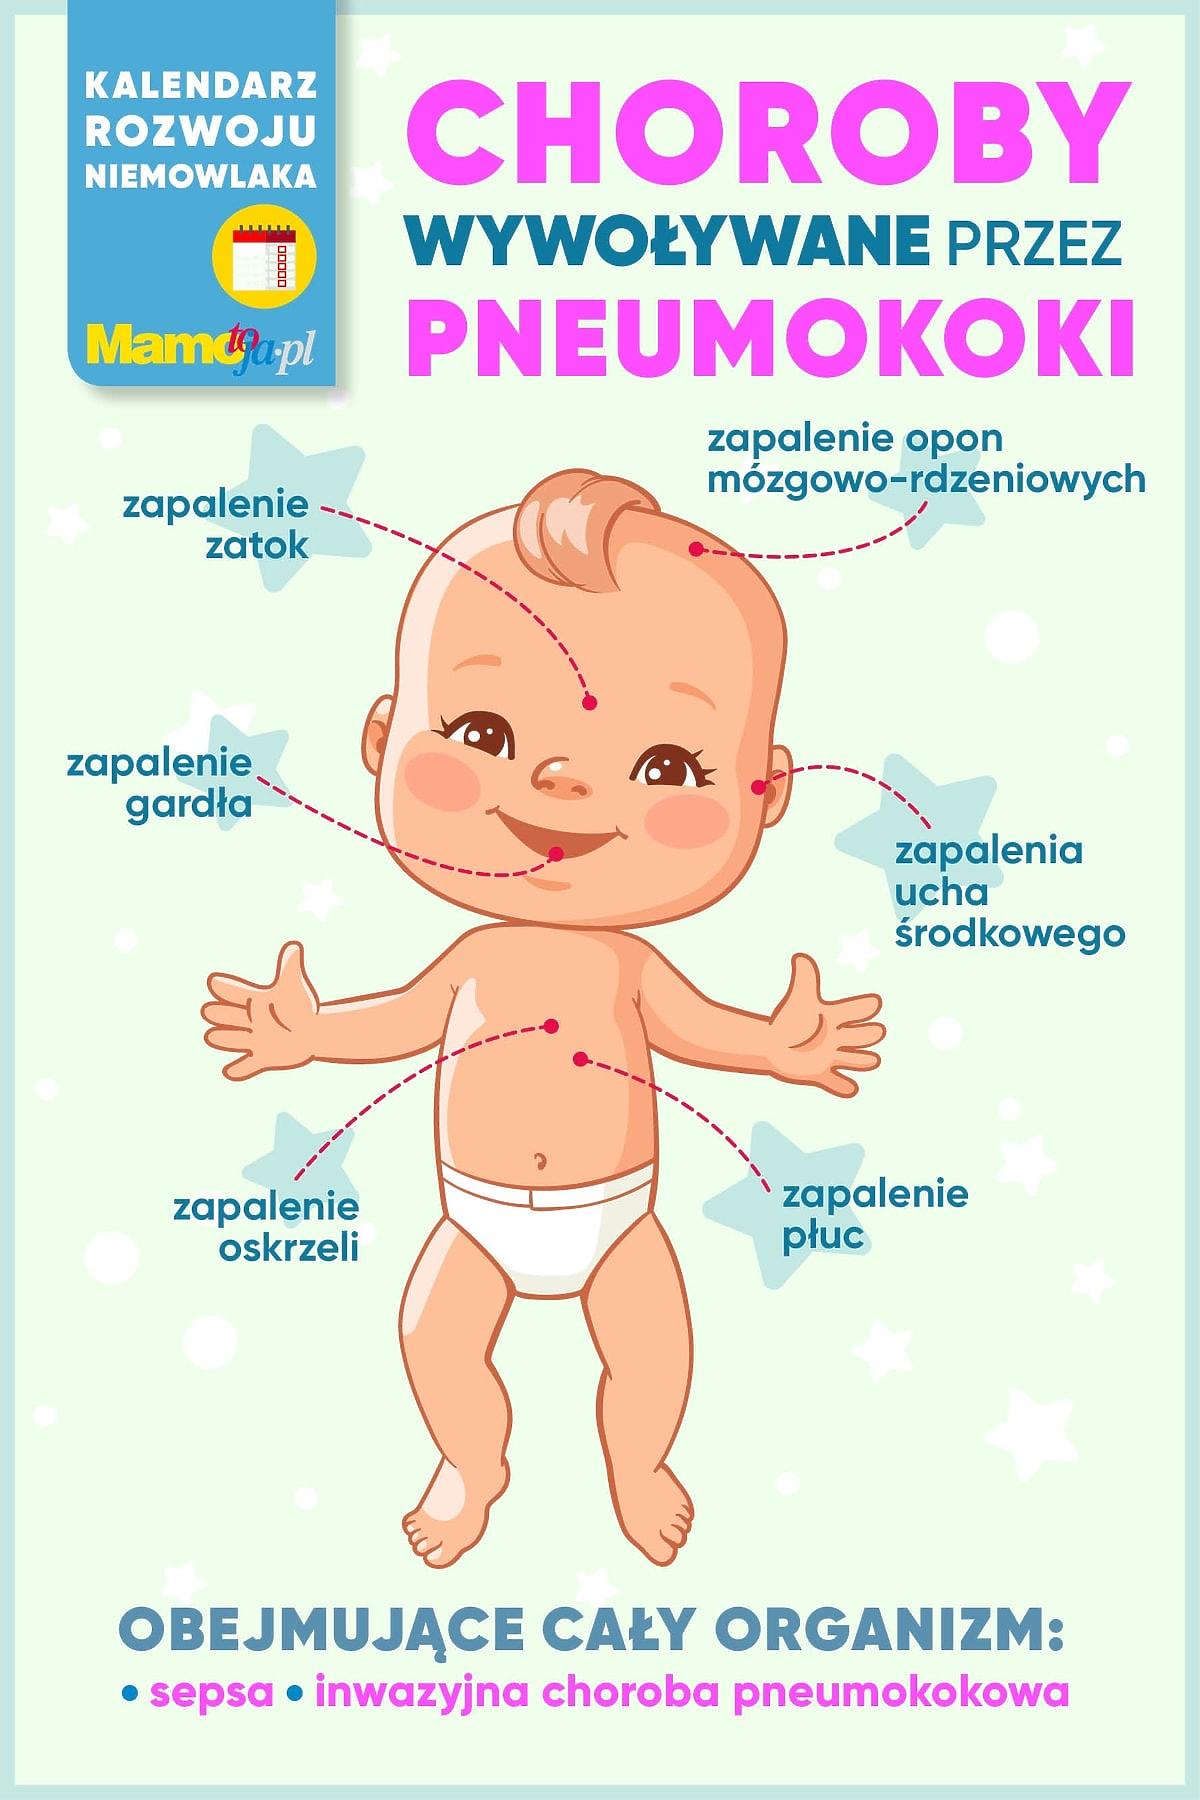 choroby wywoływane przez pneumokoki